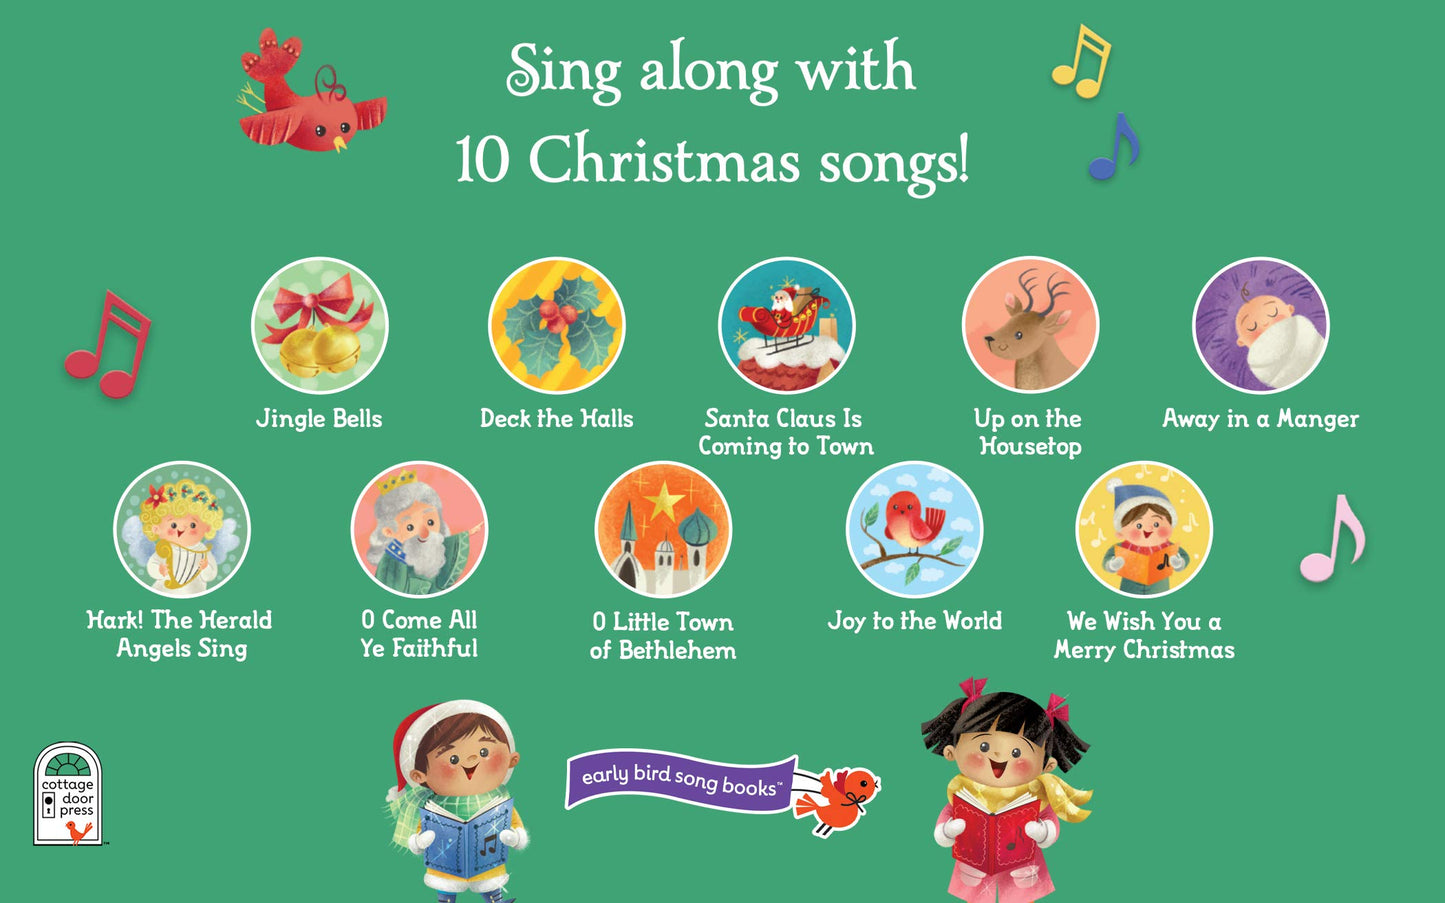 Jingle Bells - Super Simple Songs